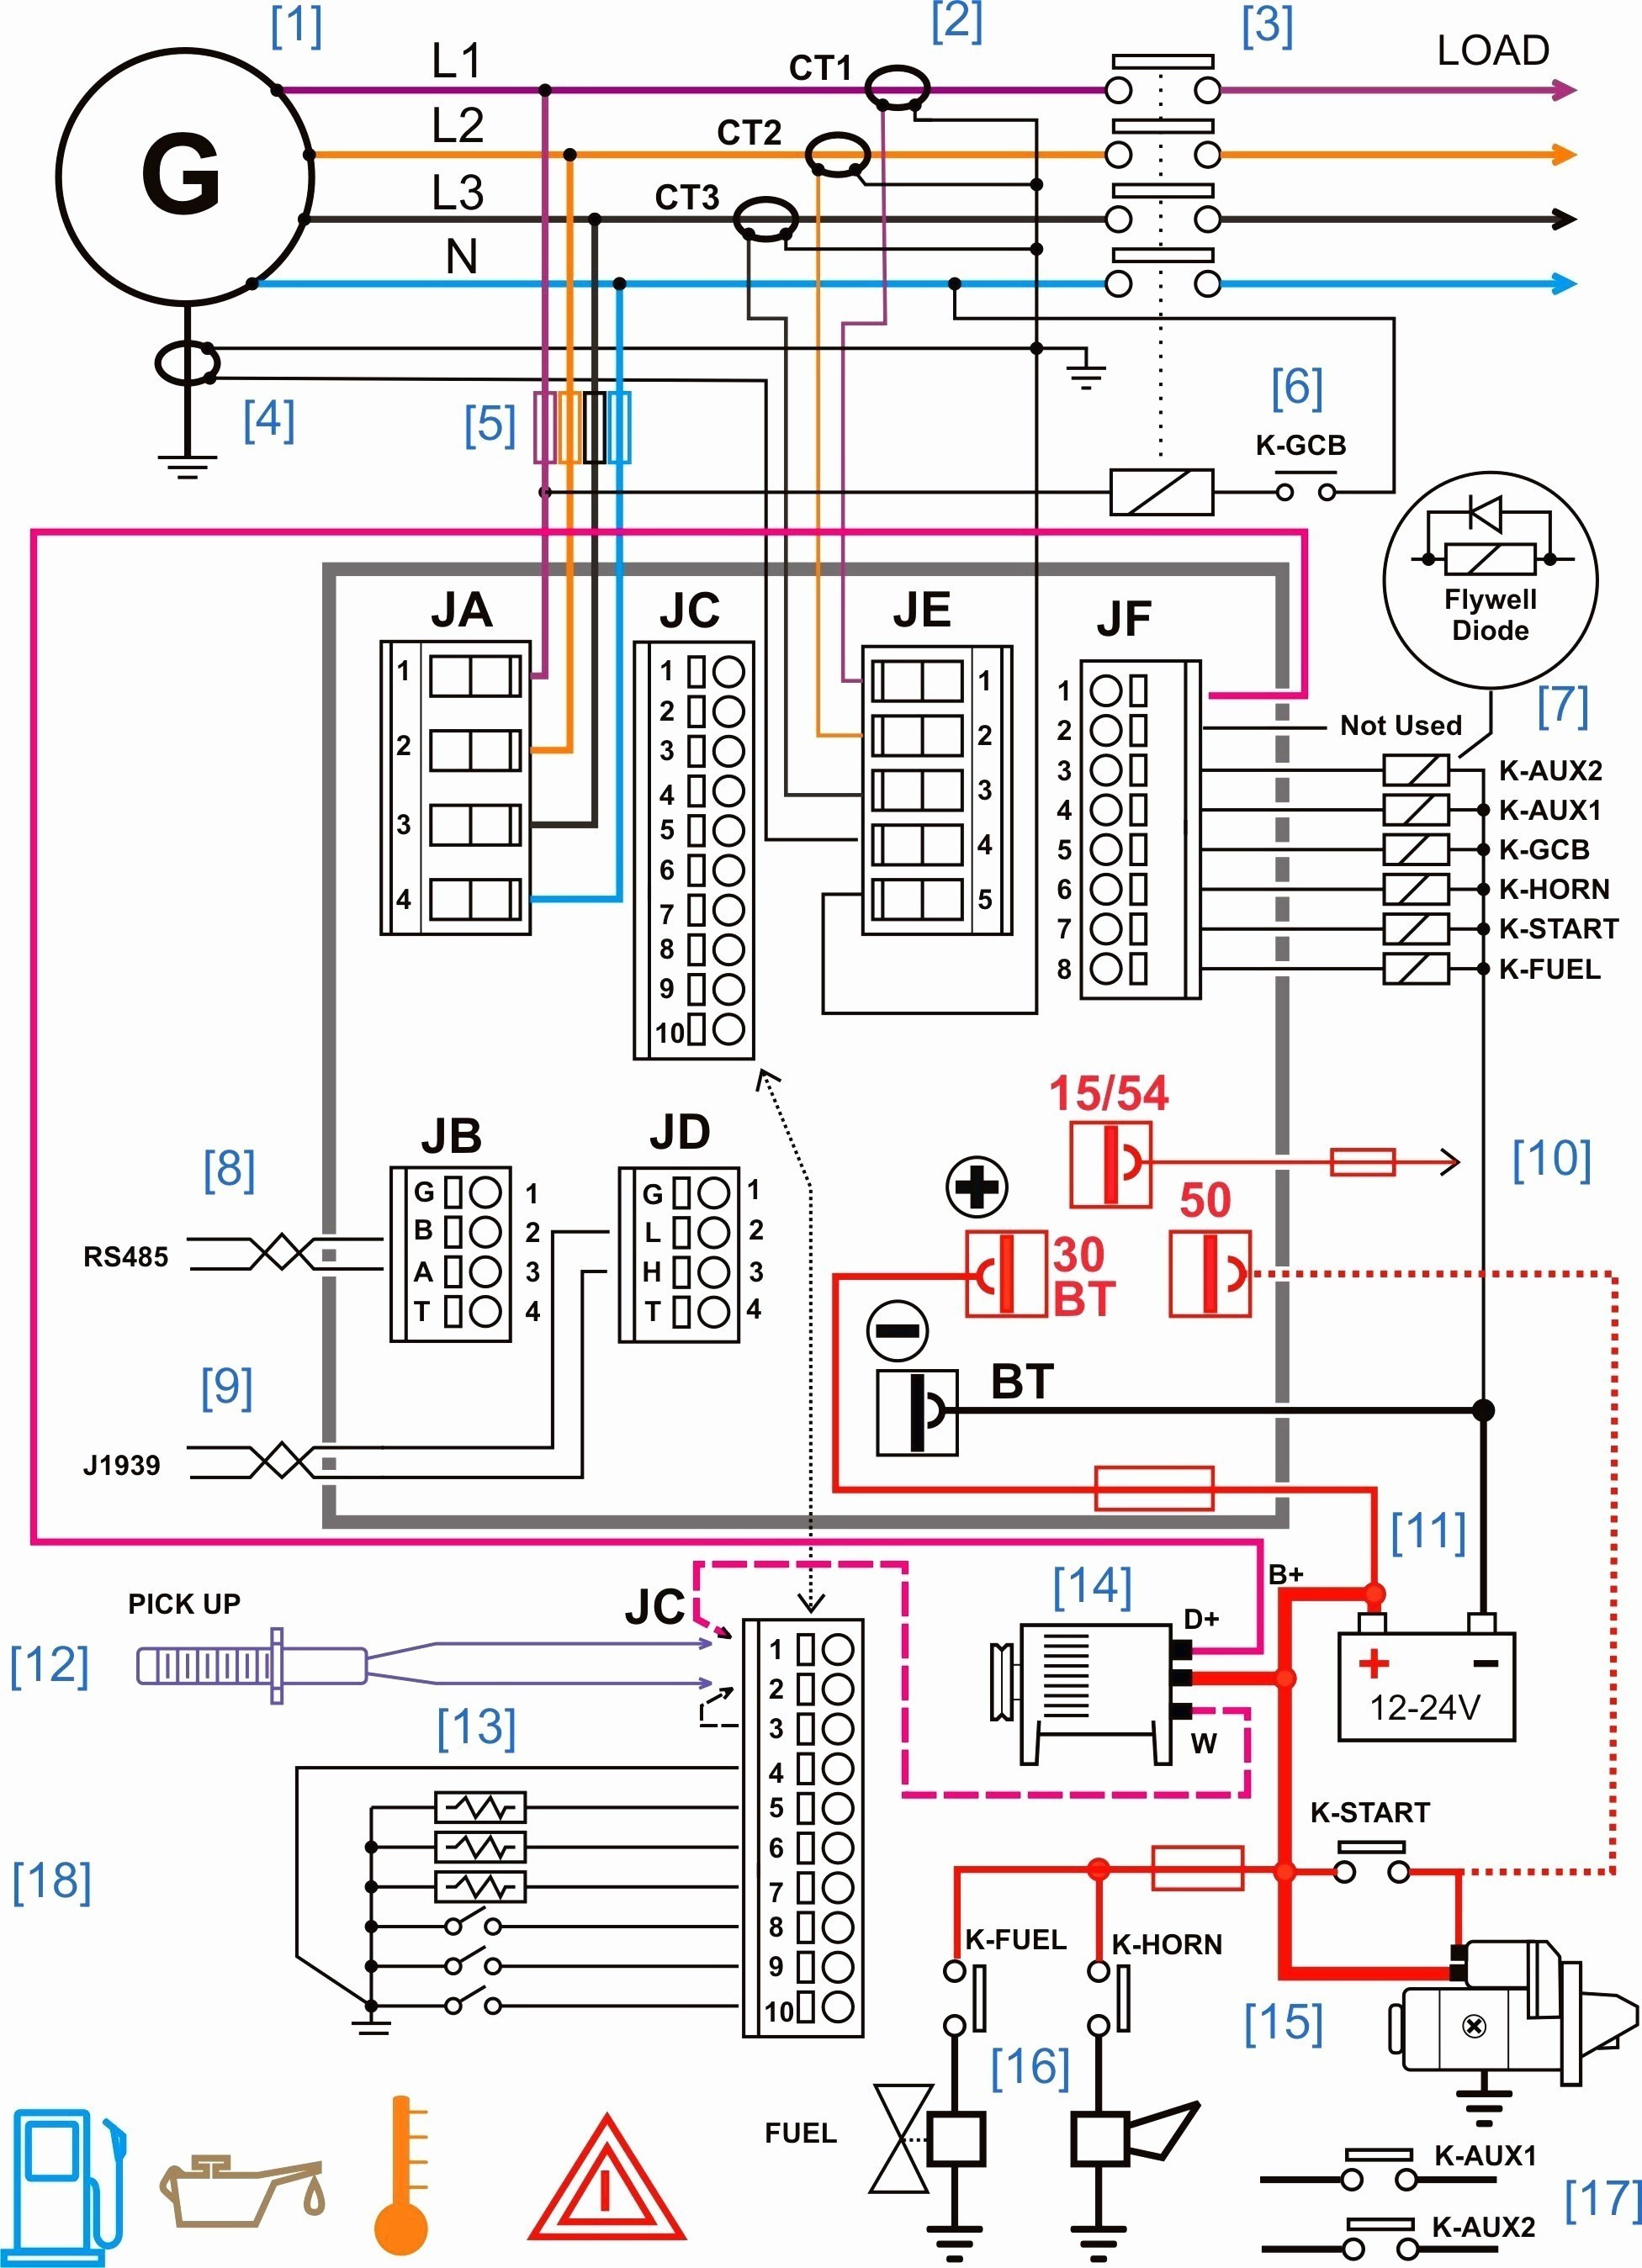 Car Radio Wiring Diagrams Free Save Audi A4 Cd Player Wiring Diagram Of Car Radio Wiring Diagrams Free